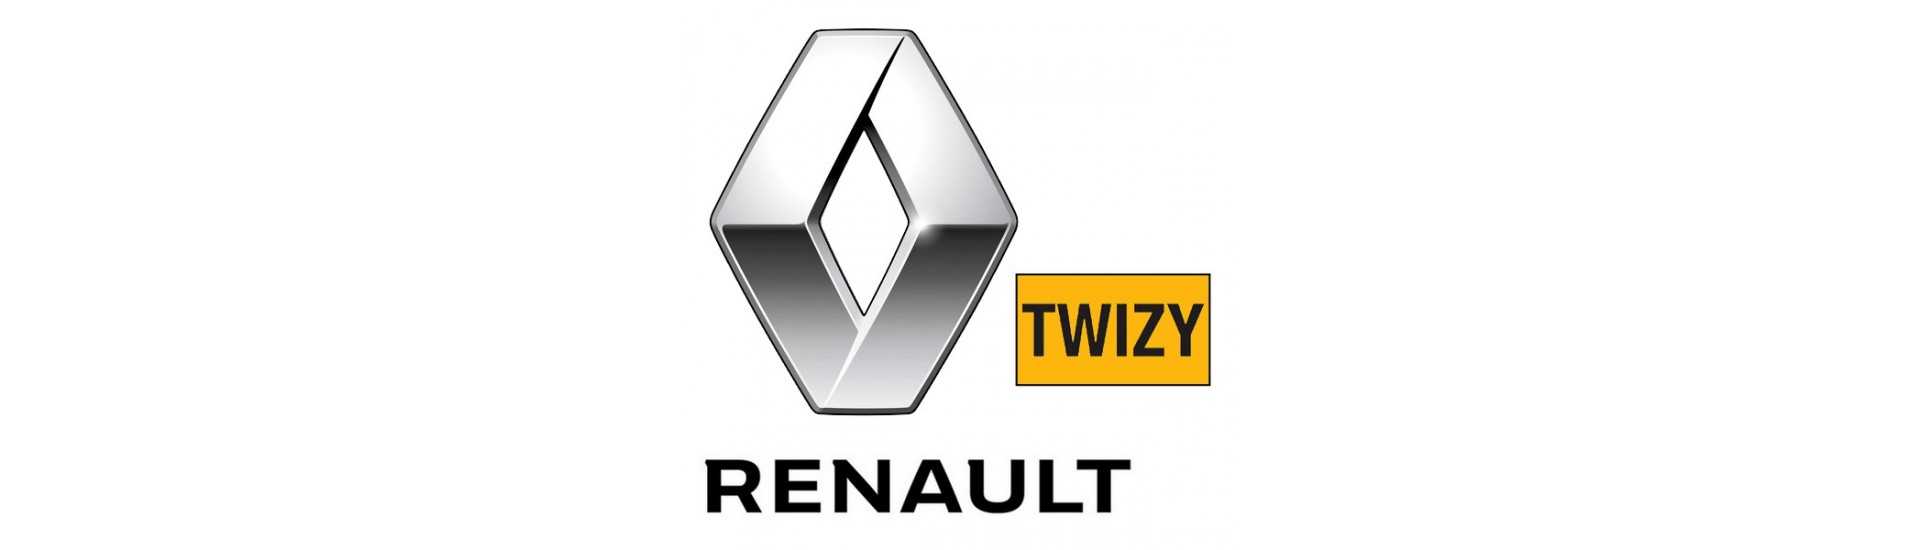 Bester Preis für Auto ohne Lizenz Renault Twizy